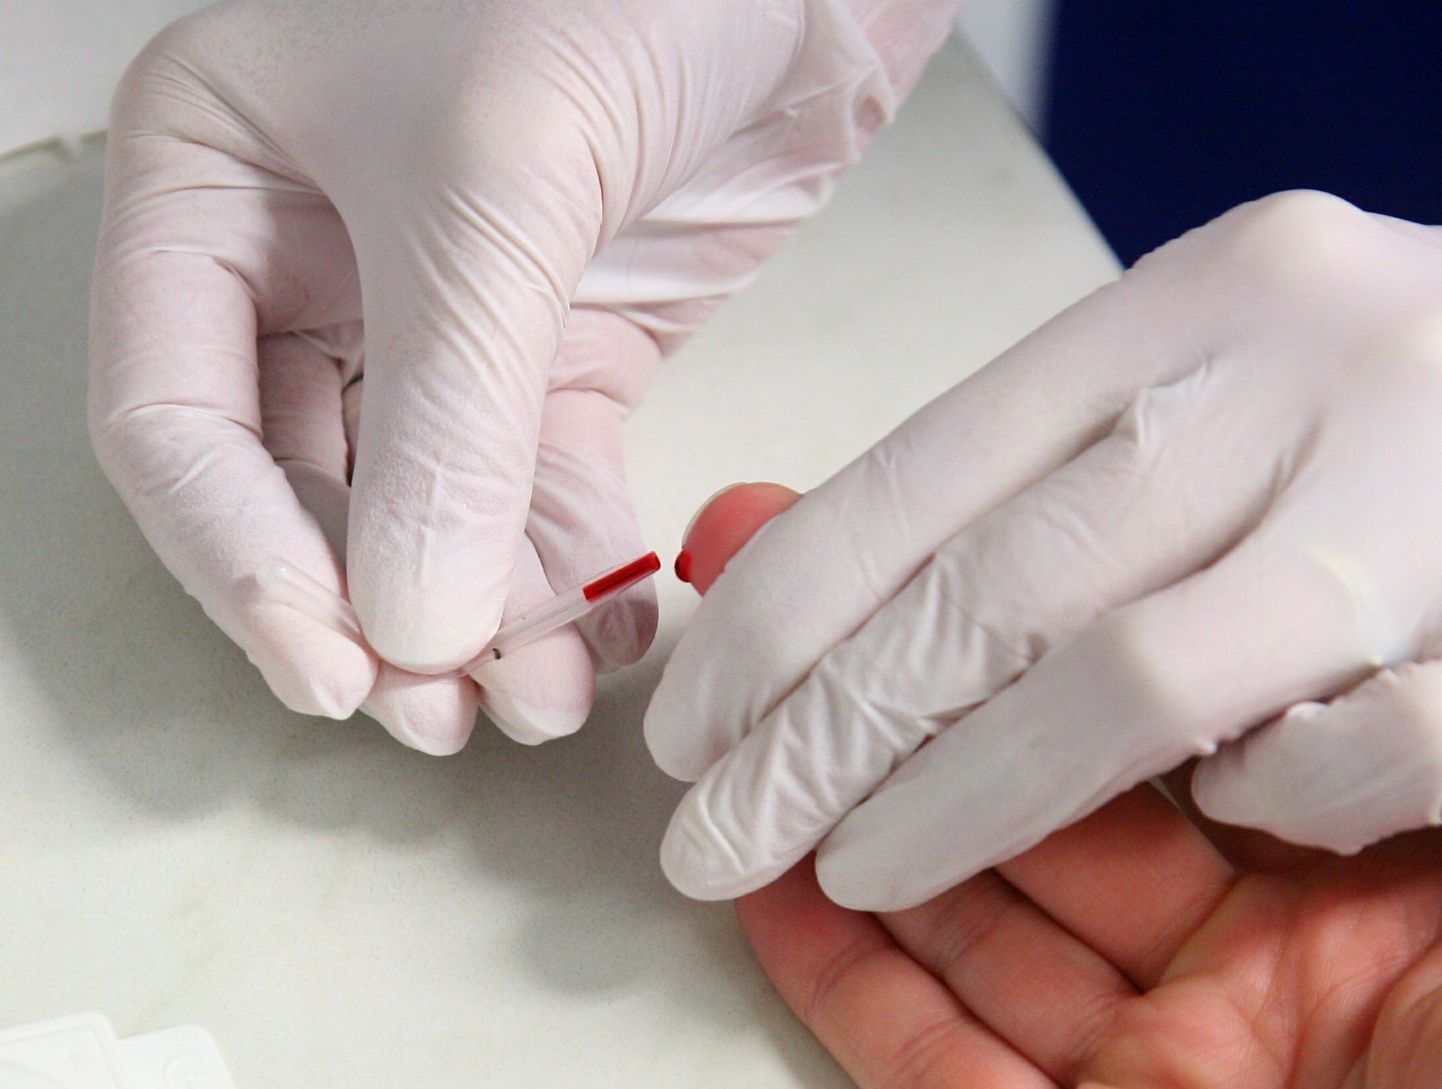 HIVi kiirtestiks on vaja vaid paar tilka verd sõrme otsast.